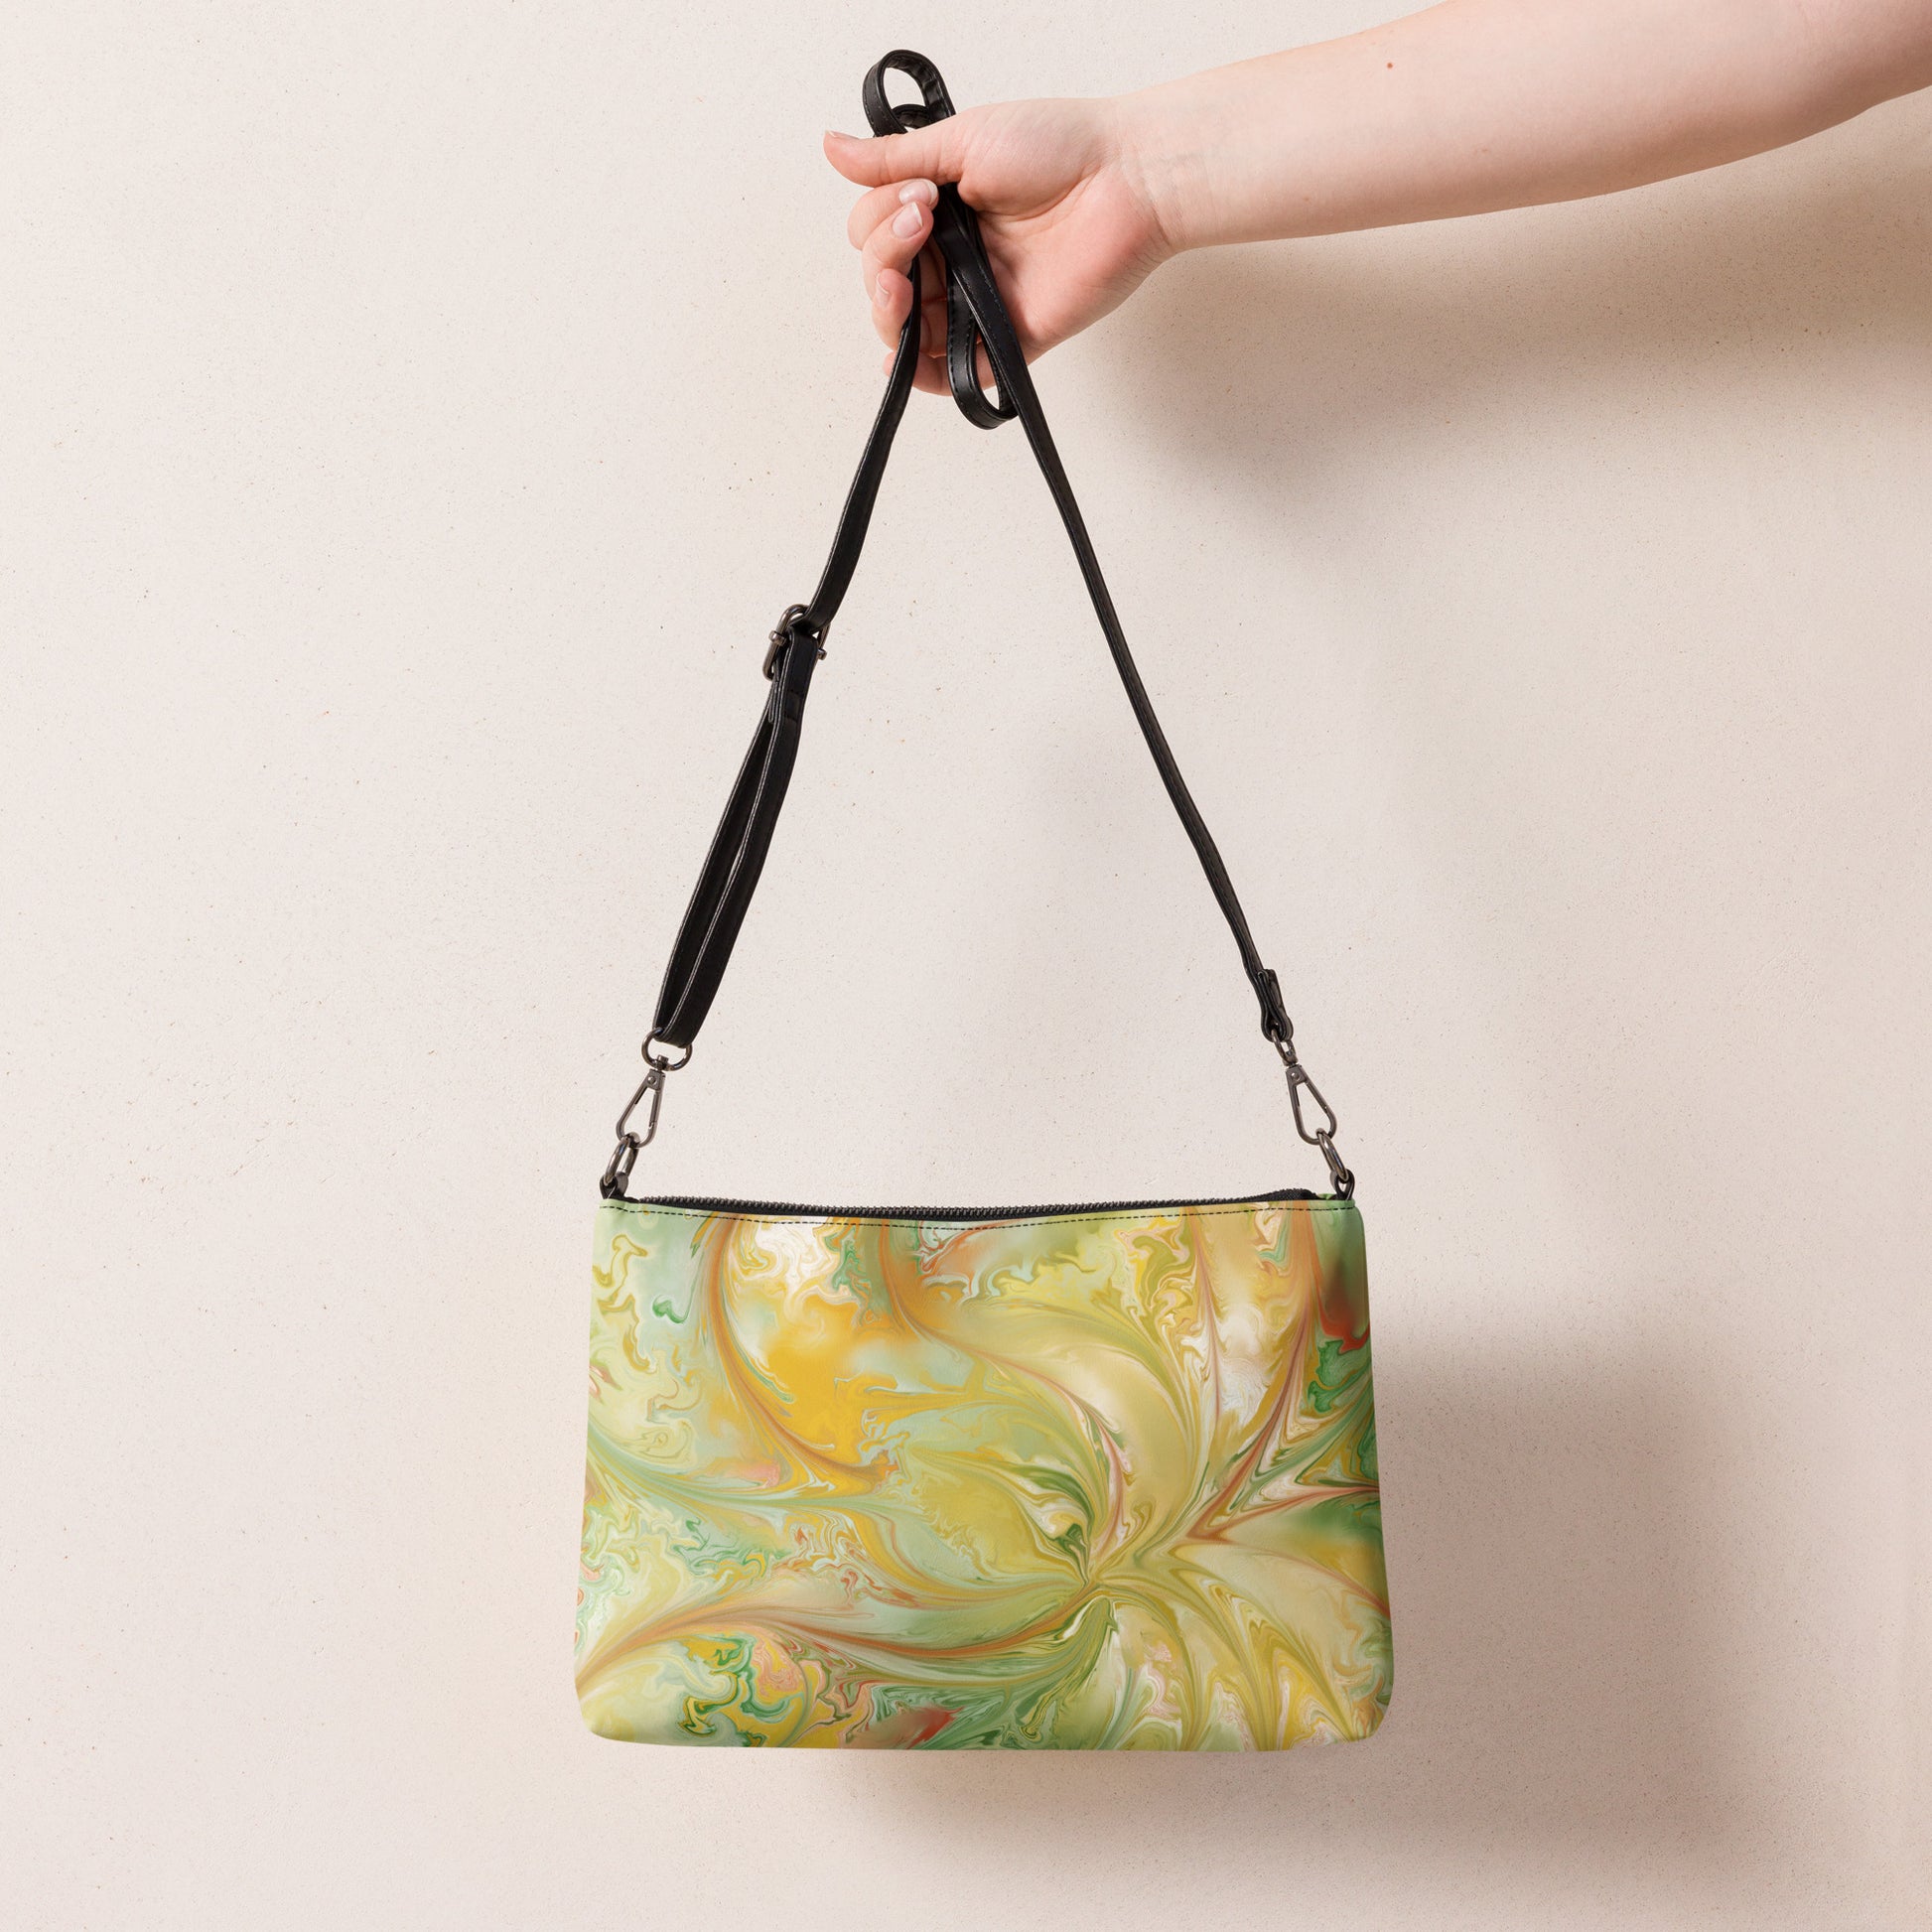 Floral Swirl Crossbody bag by Emmy Spoon